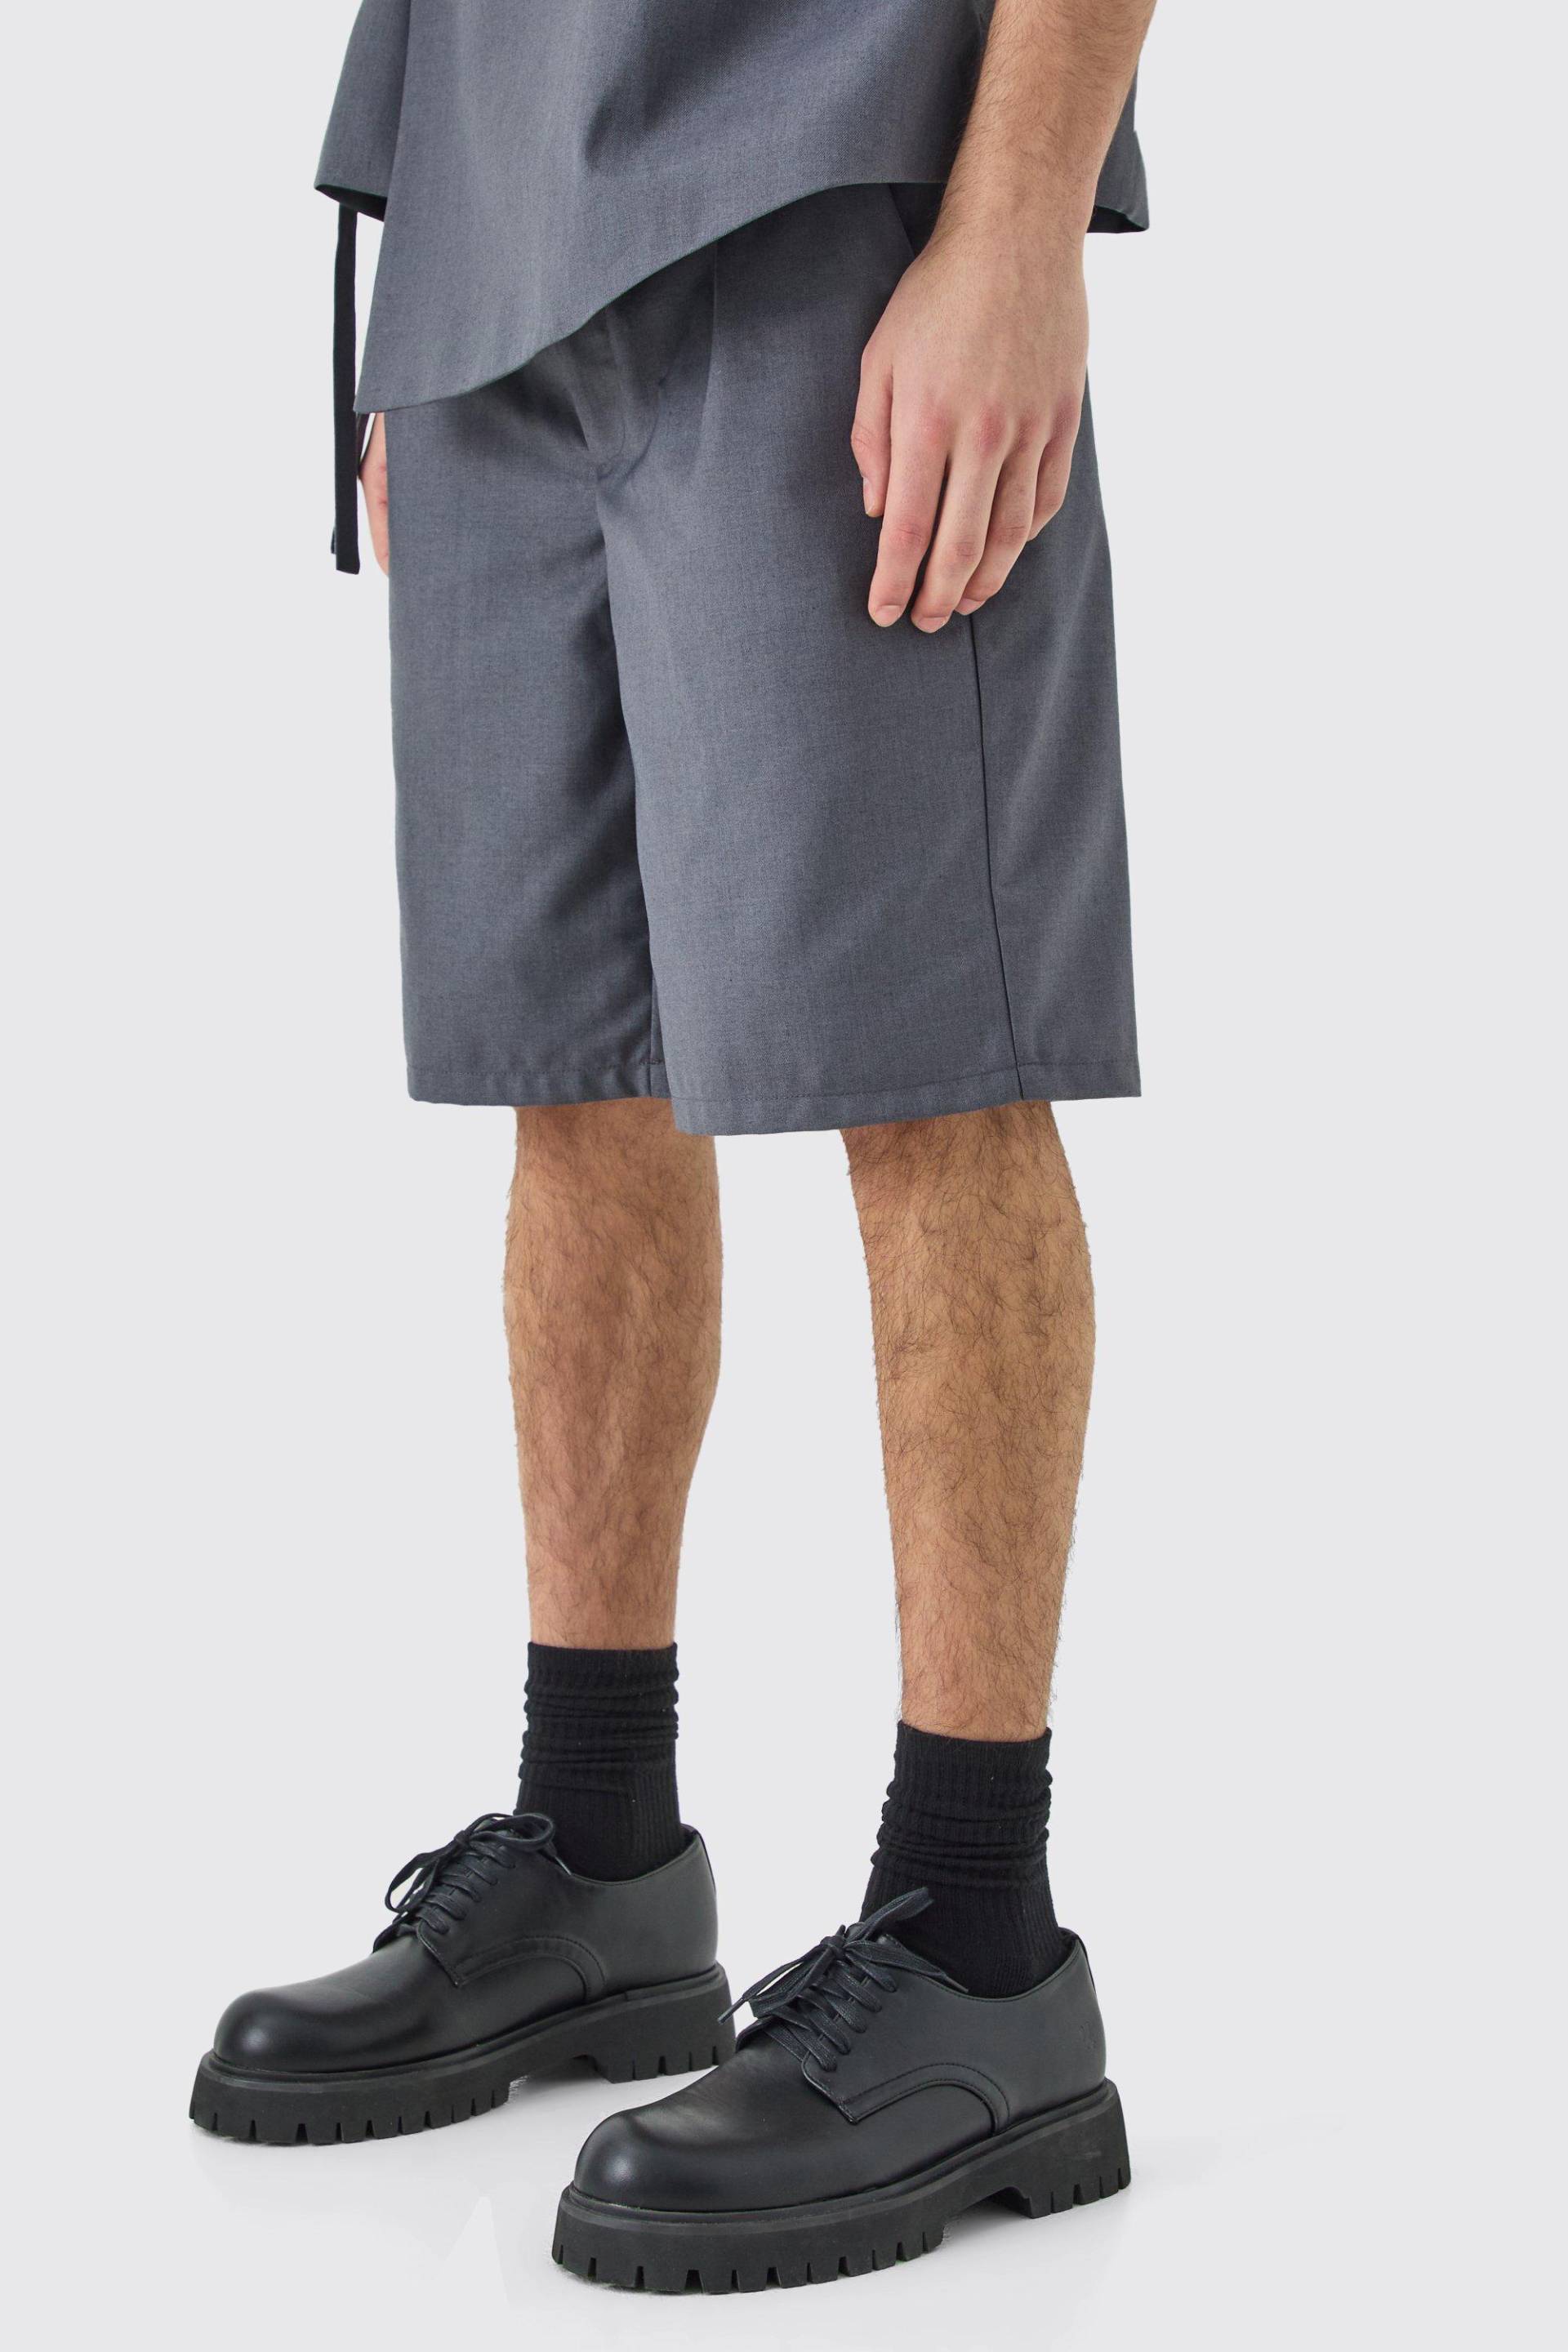 Mens Tailored Shorts - Grau - 36, Grau von boohooman